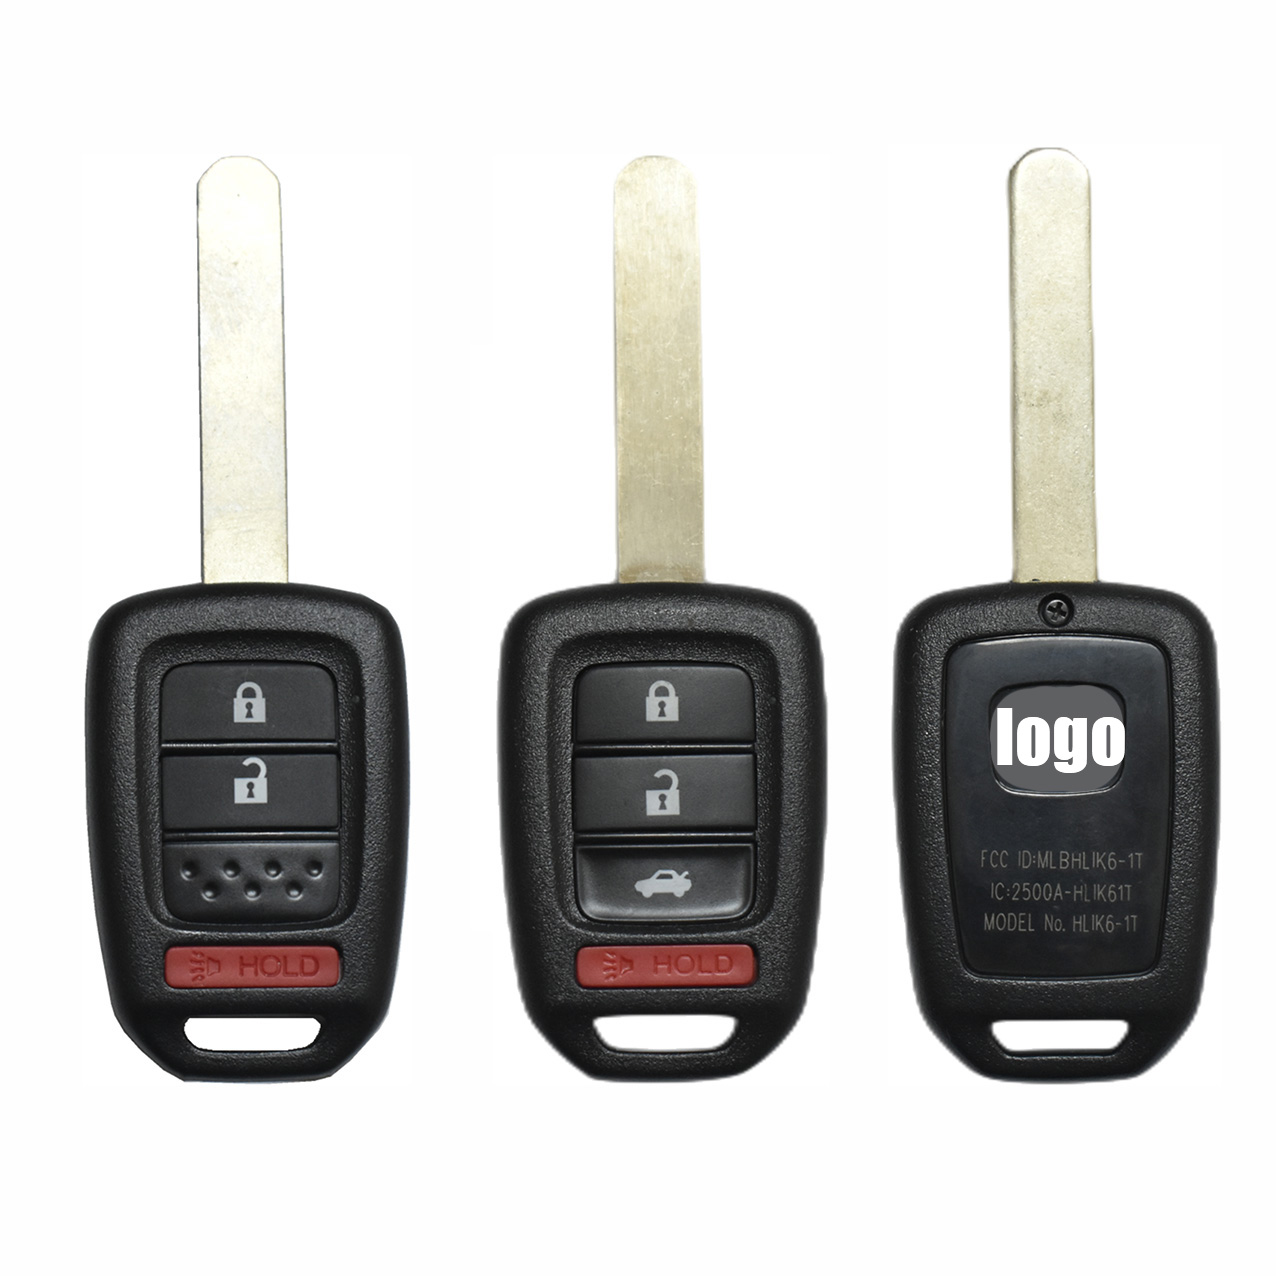 Suitable For Honda FCCID: Hlik6-1t 433MHZ 46 Chip  2+1/3+1buttons Smart Remote Car Key